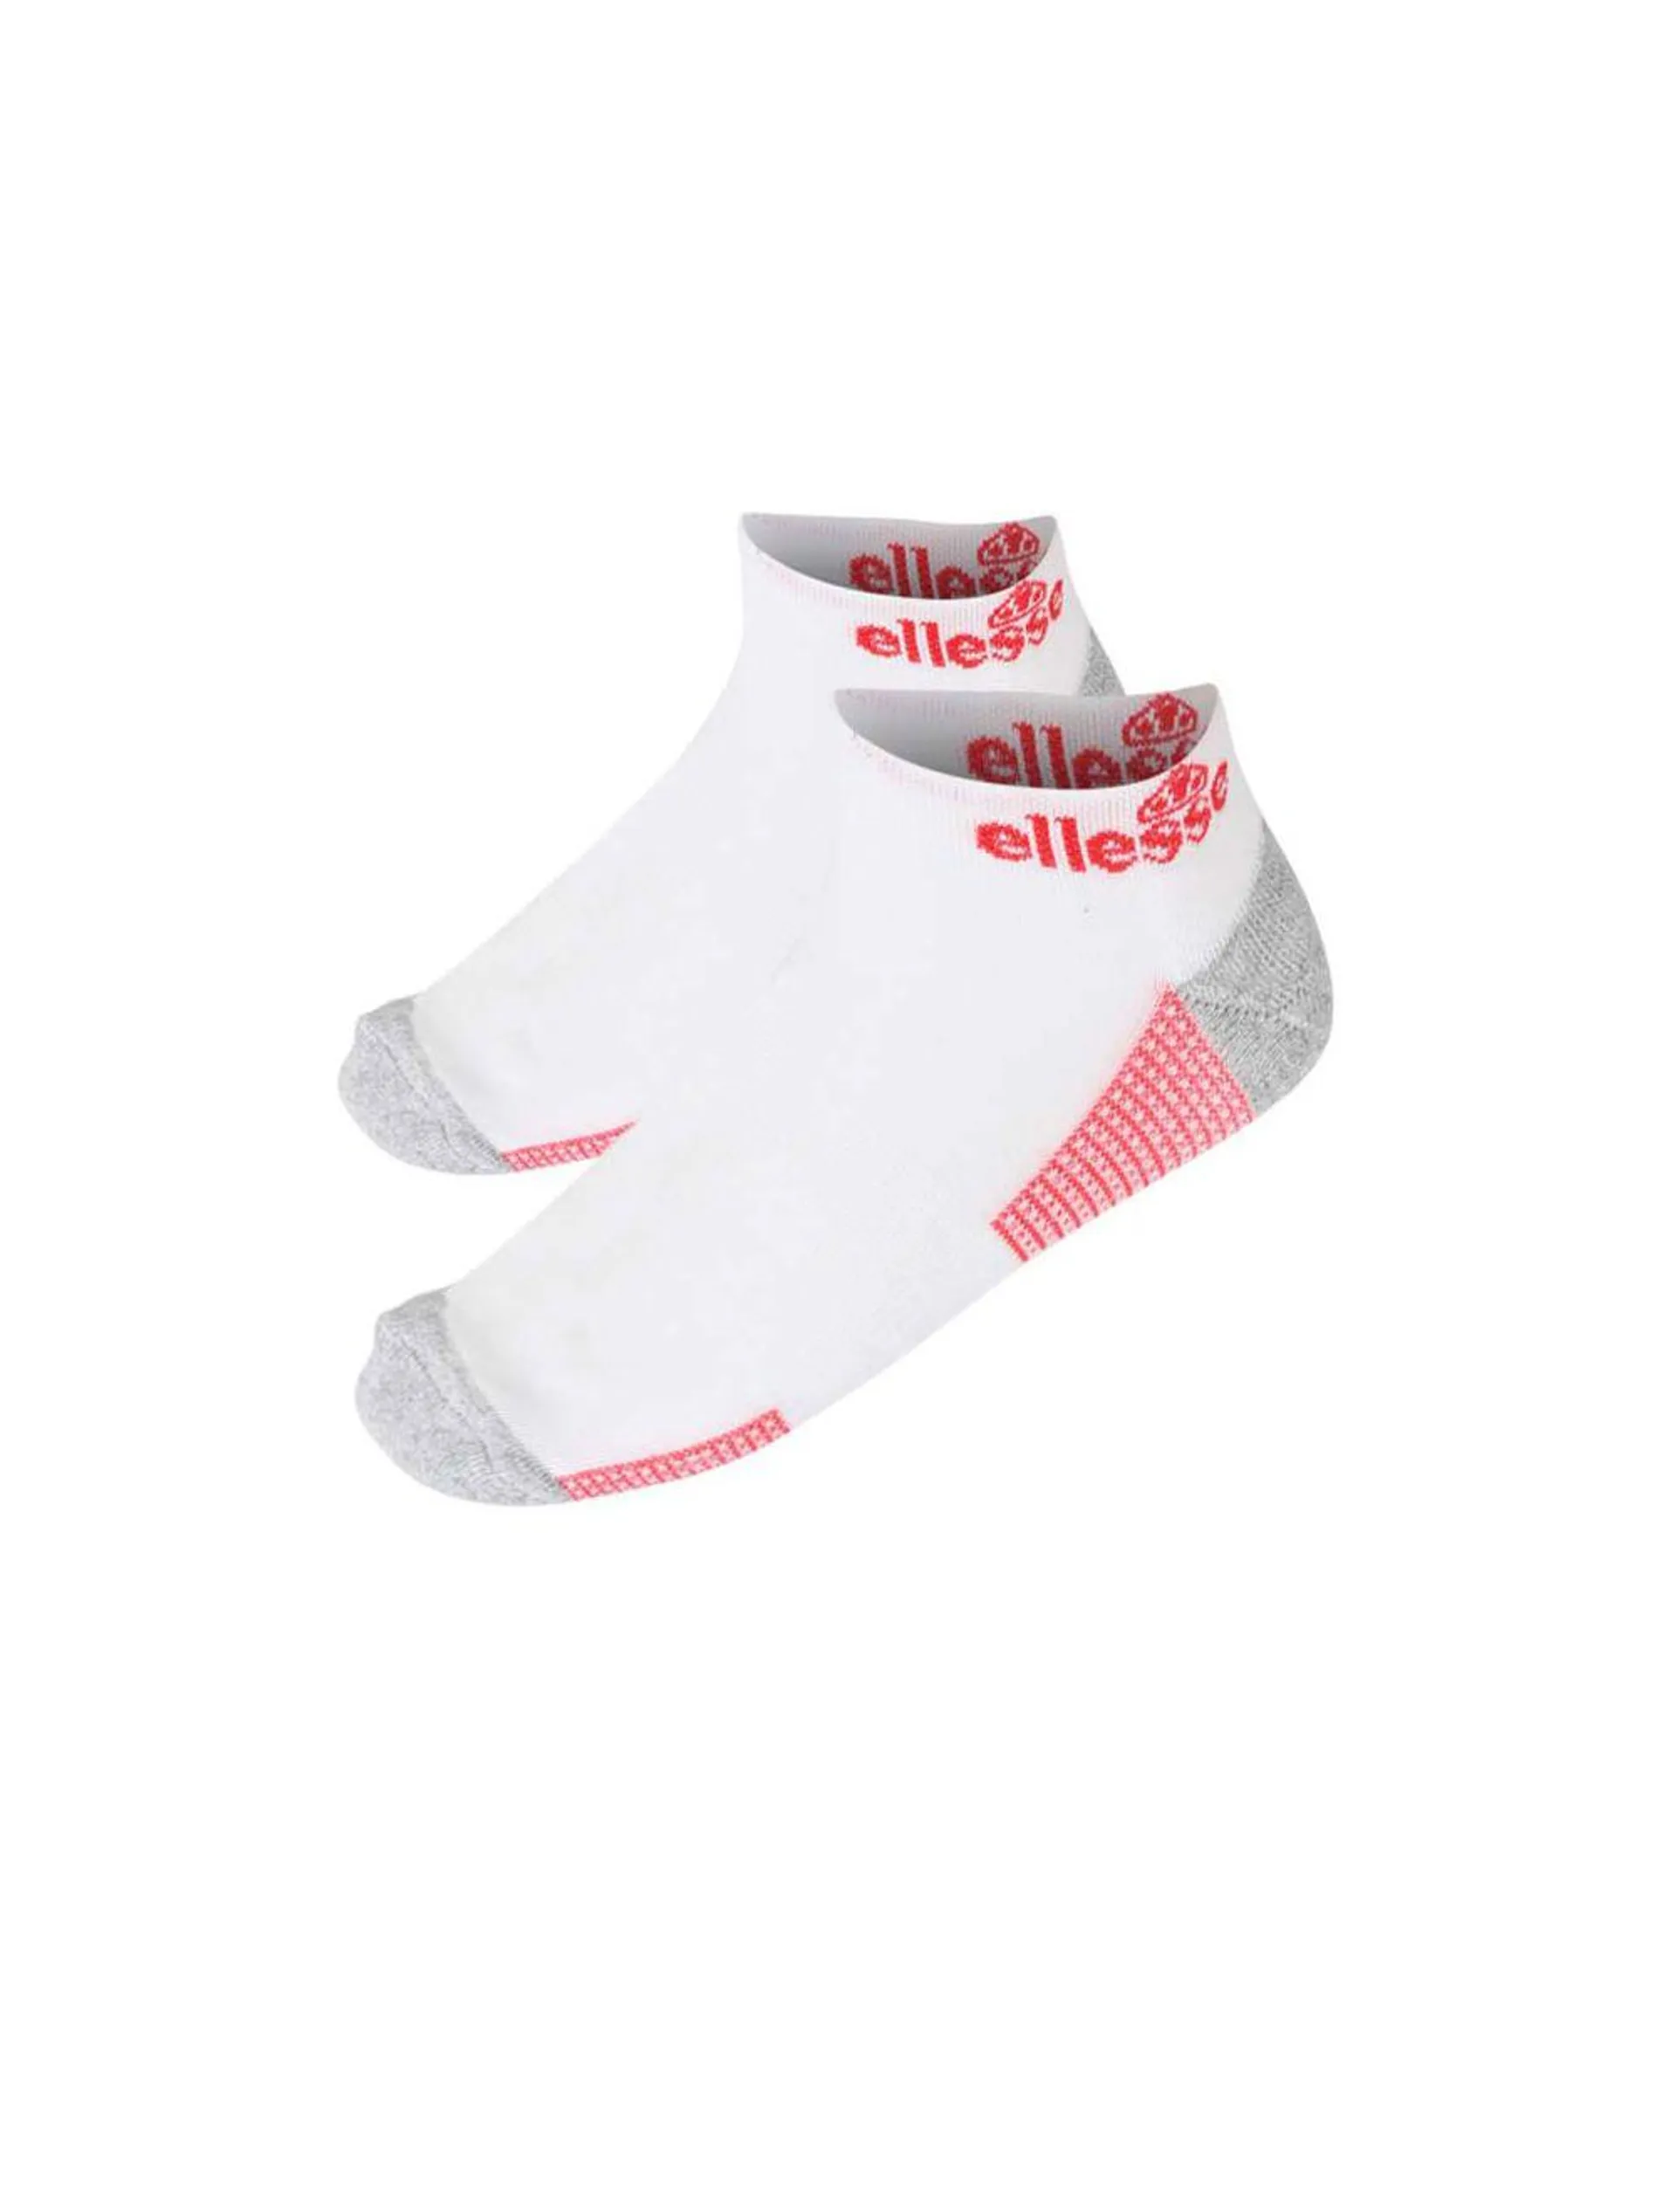 ellesse Trainer Liner Logo Print Socks Mens White